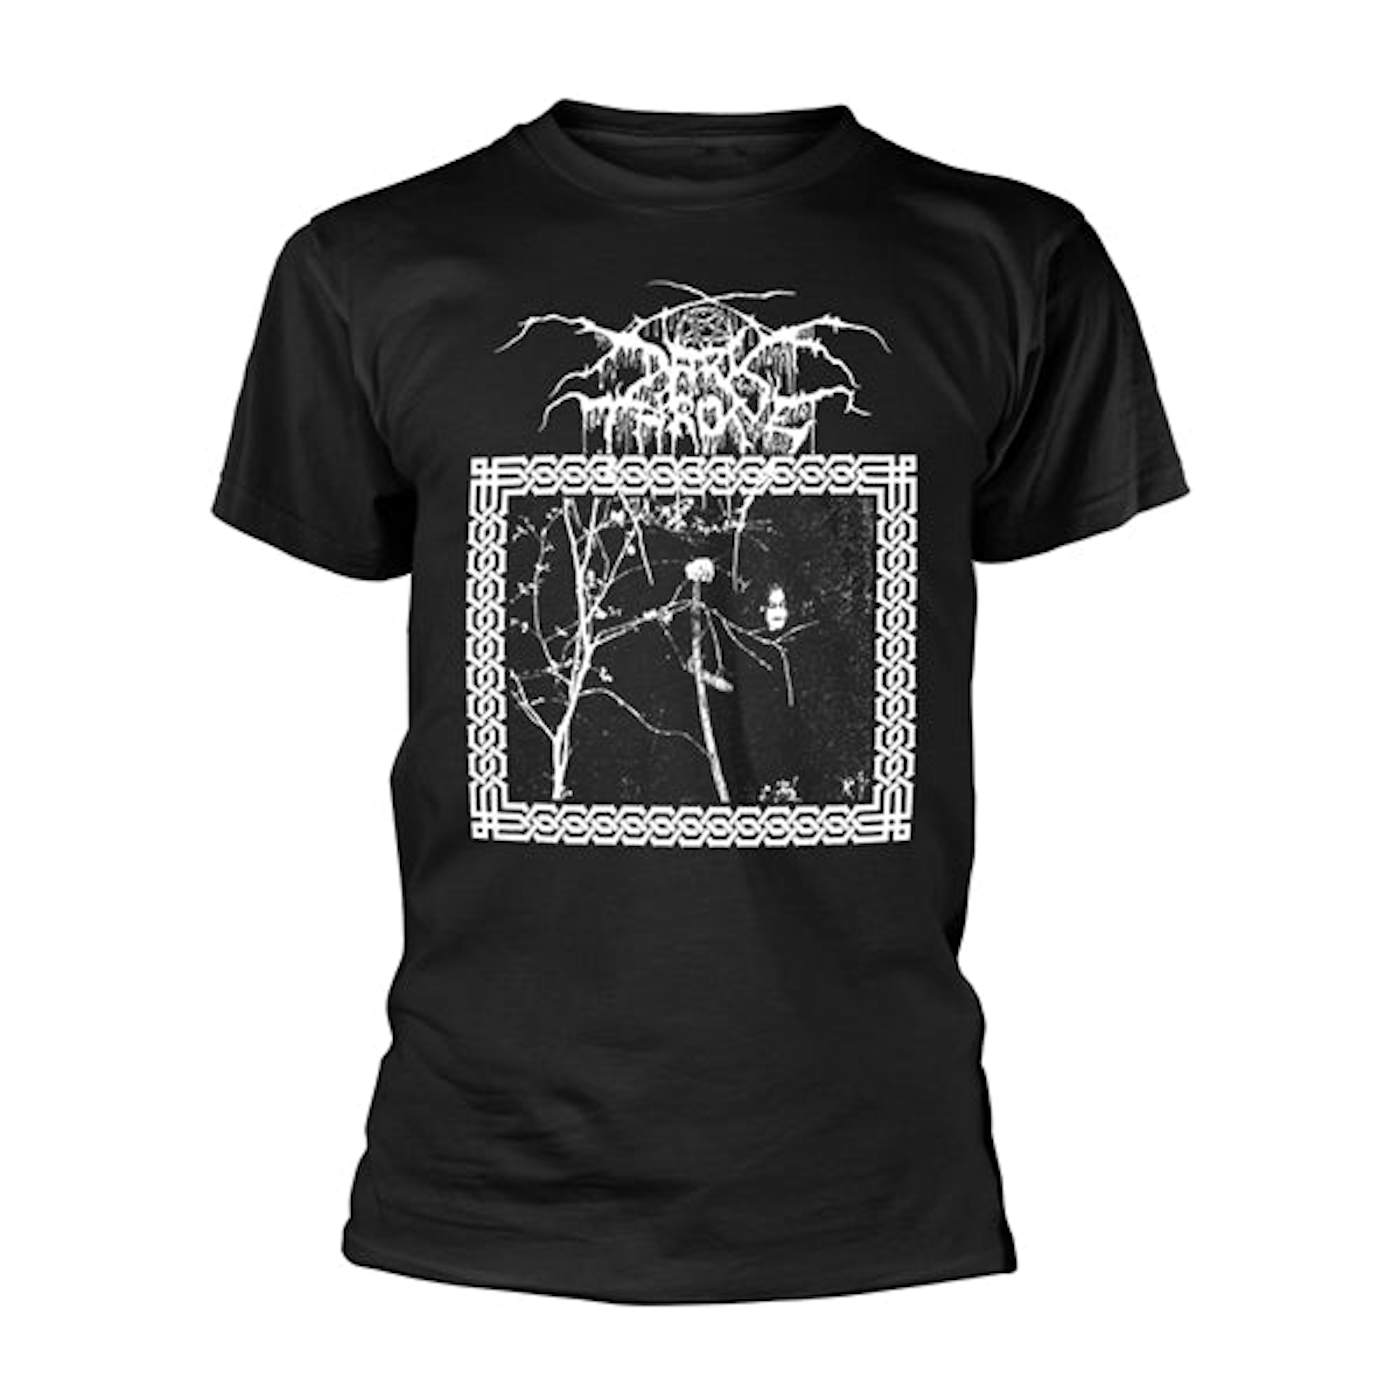 Darkthrone T Shirt - Under A Funeral Moon